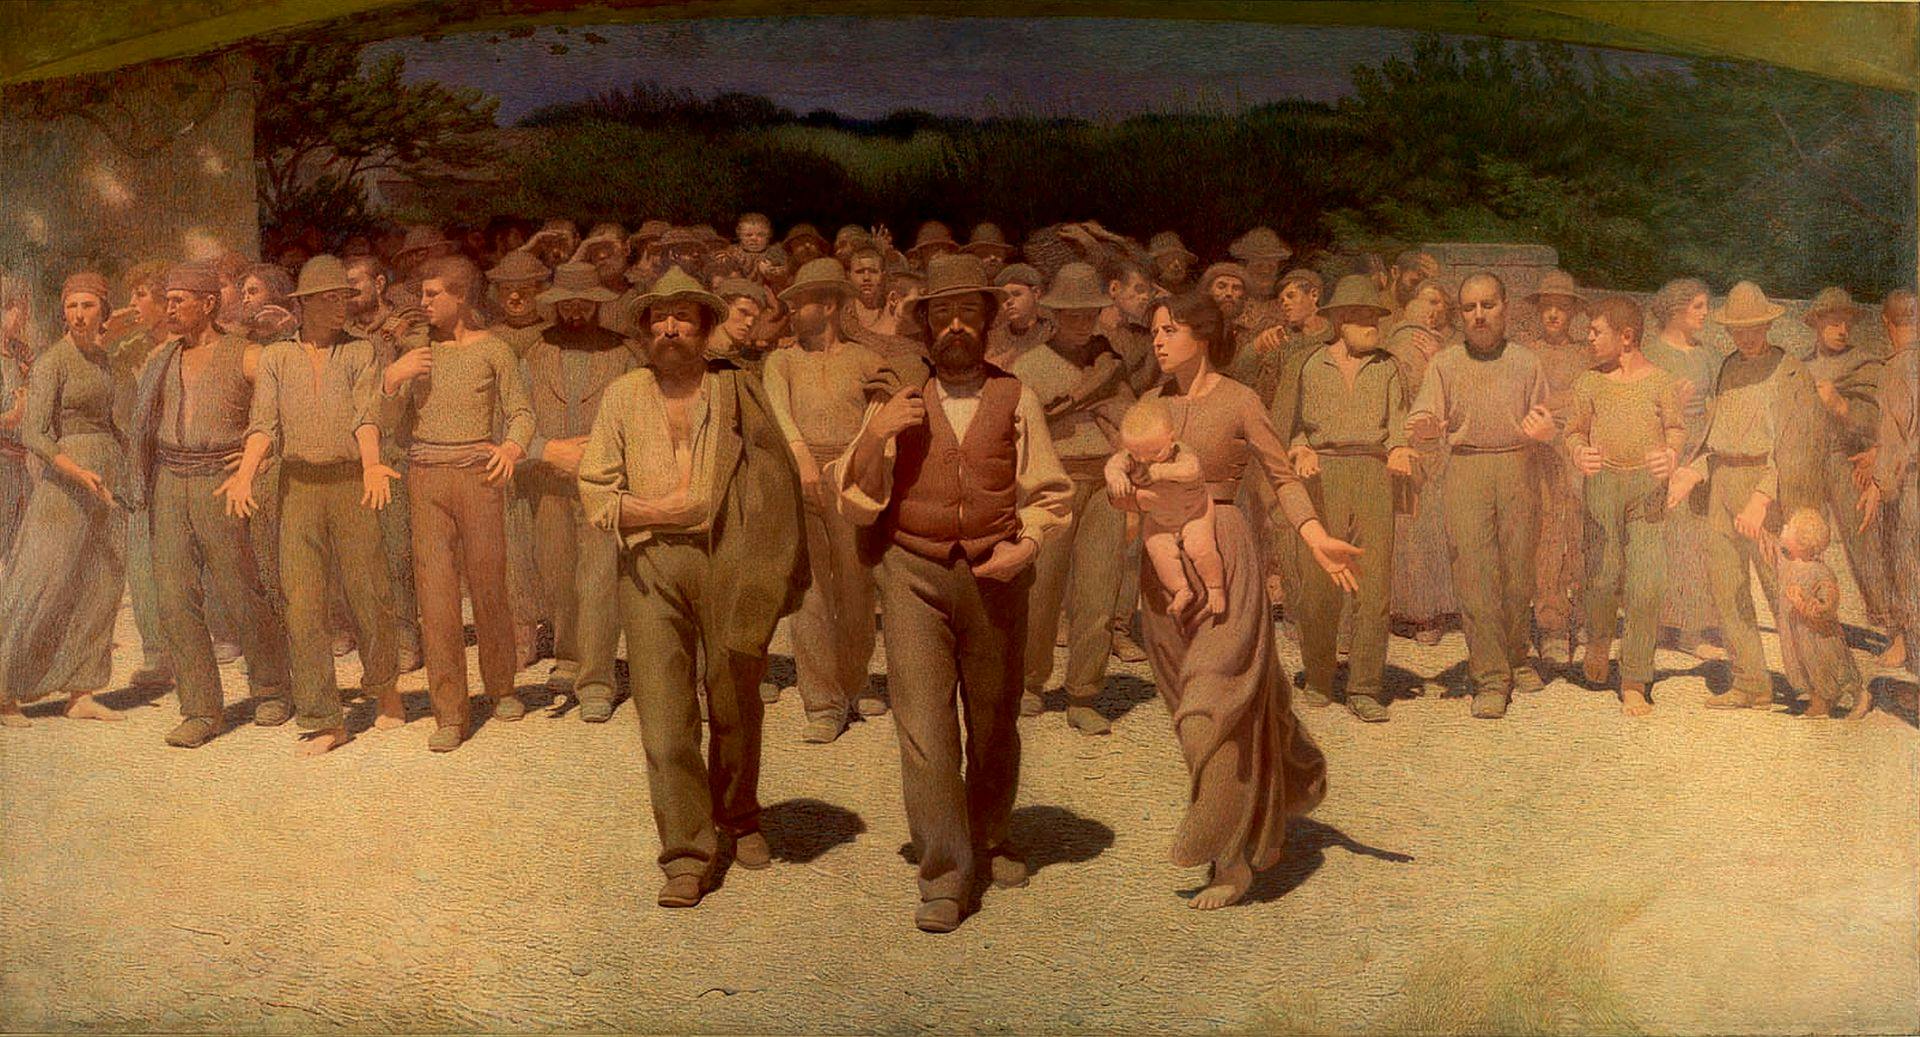 Giuseppe Pellizza da Volpedo: Il quarto stato. Oil on canvas, 1898-1901. Museo del Novecento di Milano. Souce: Wikipedia.